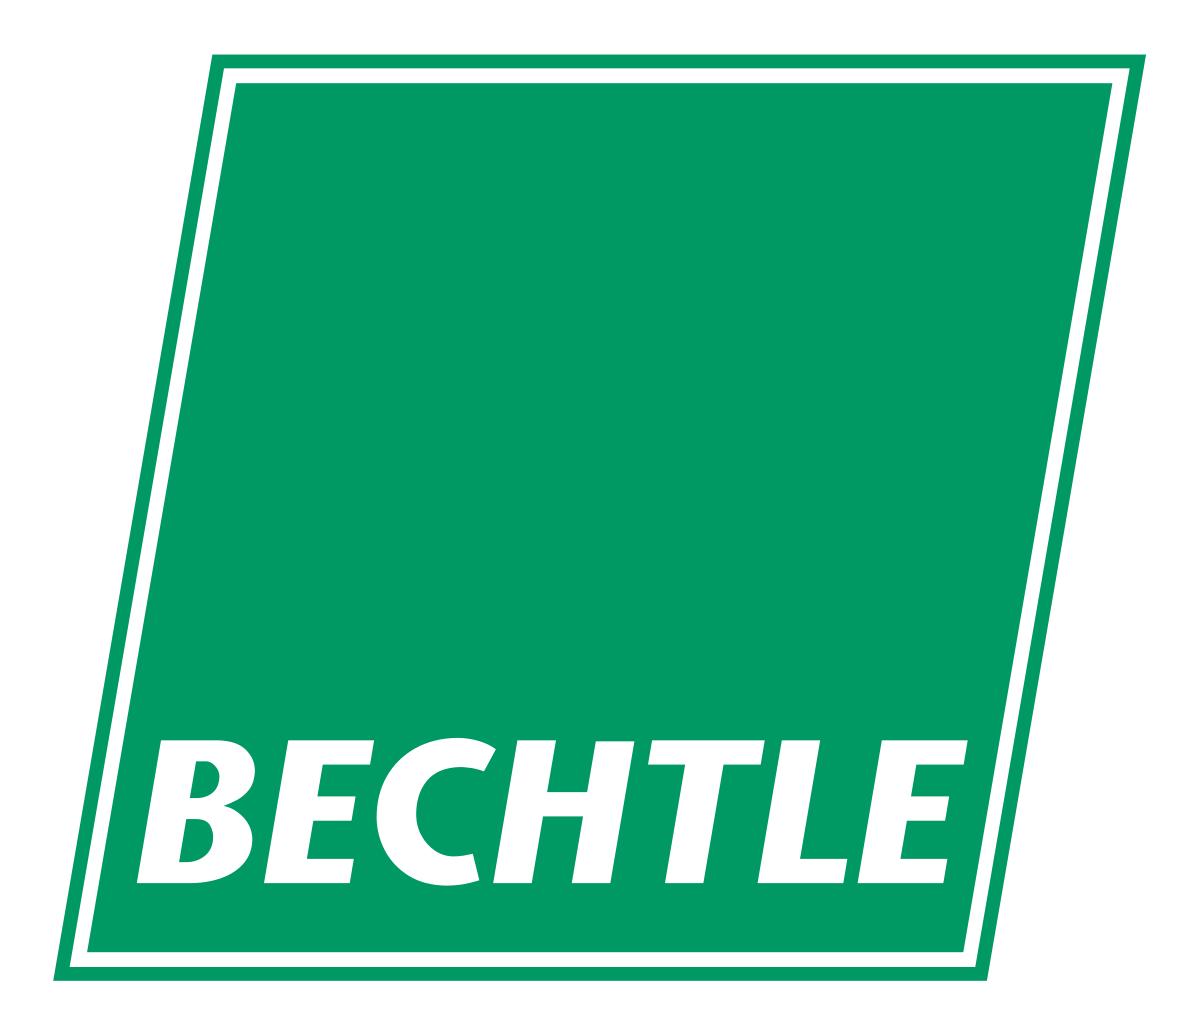 BECHTLE Brand Logo